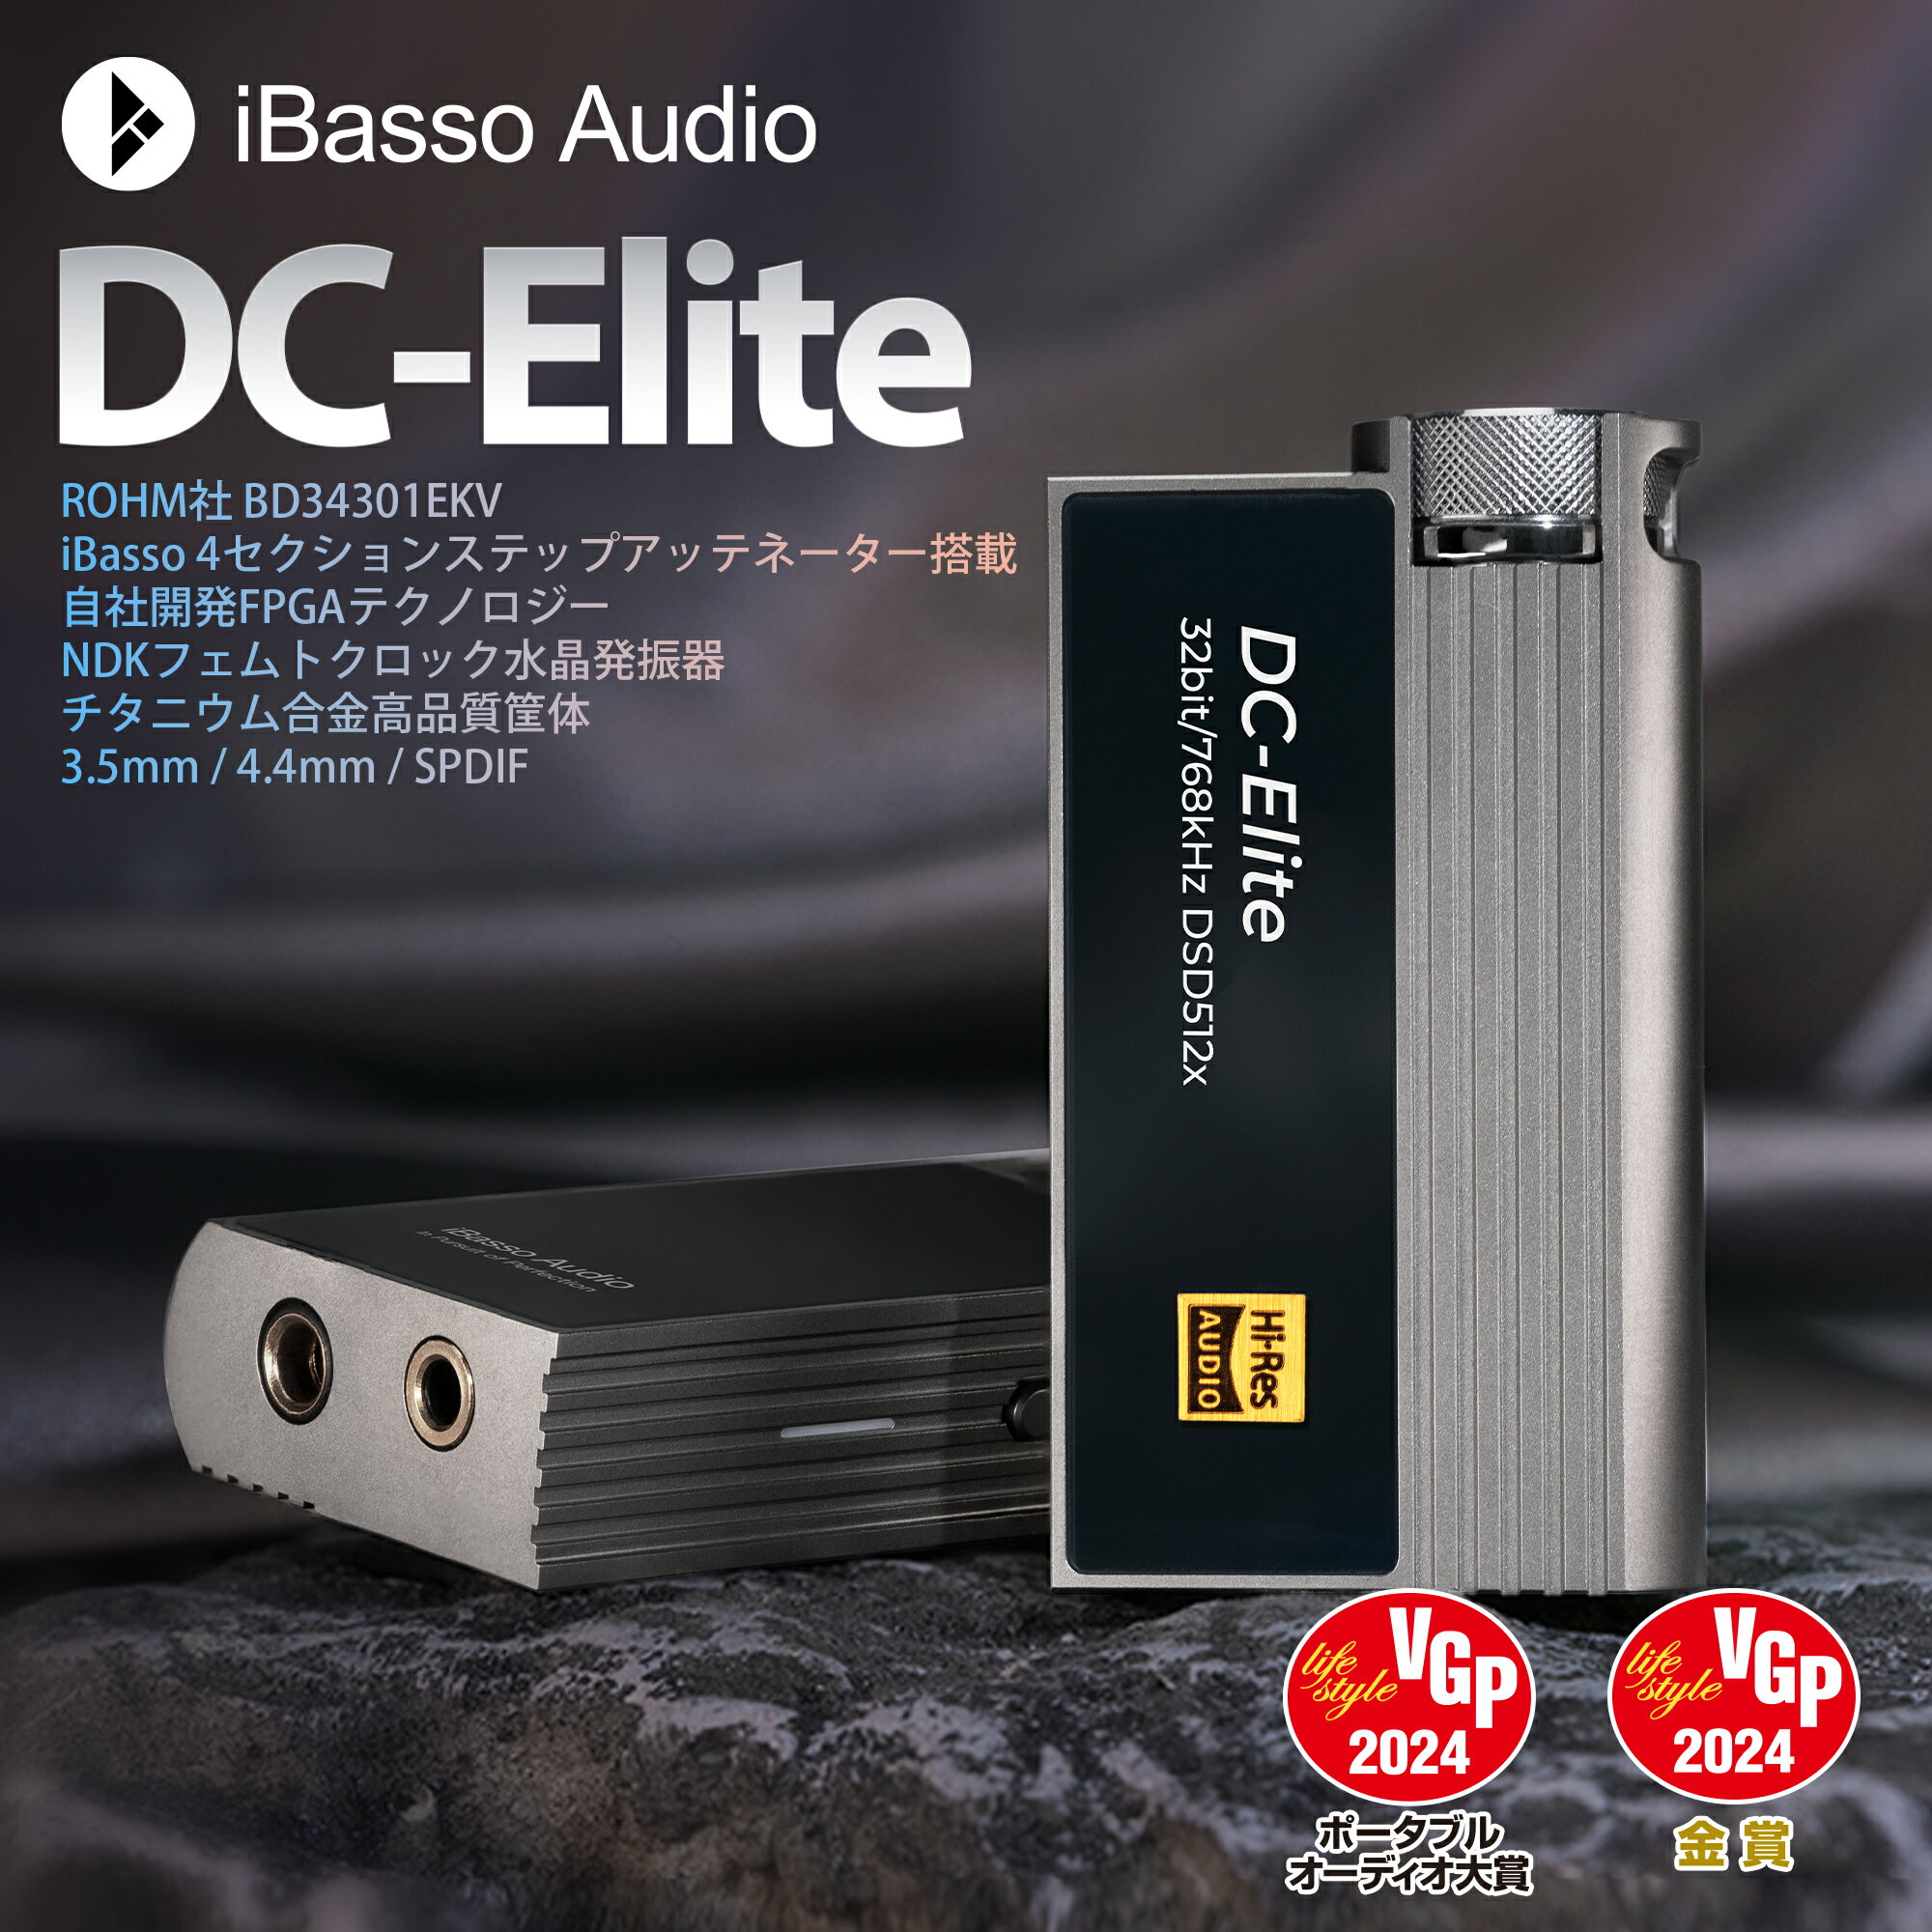 iBasso Audio DC-Elite 小型 アンプTy